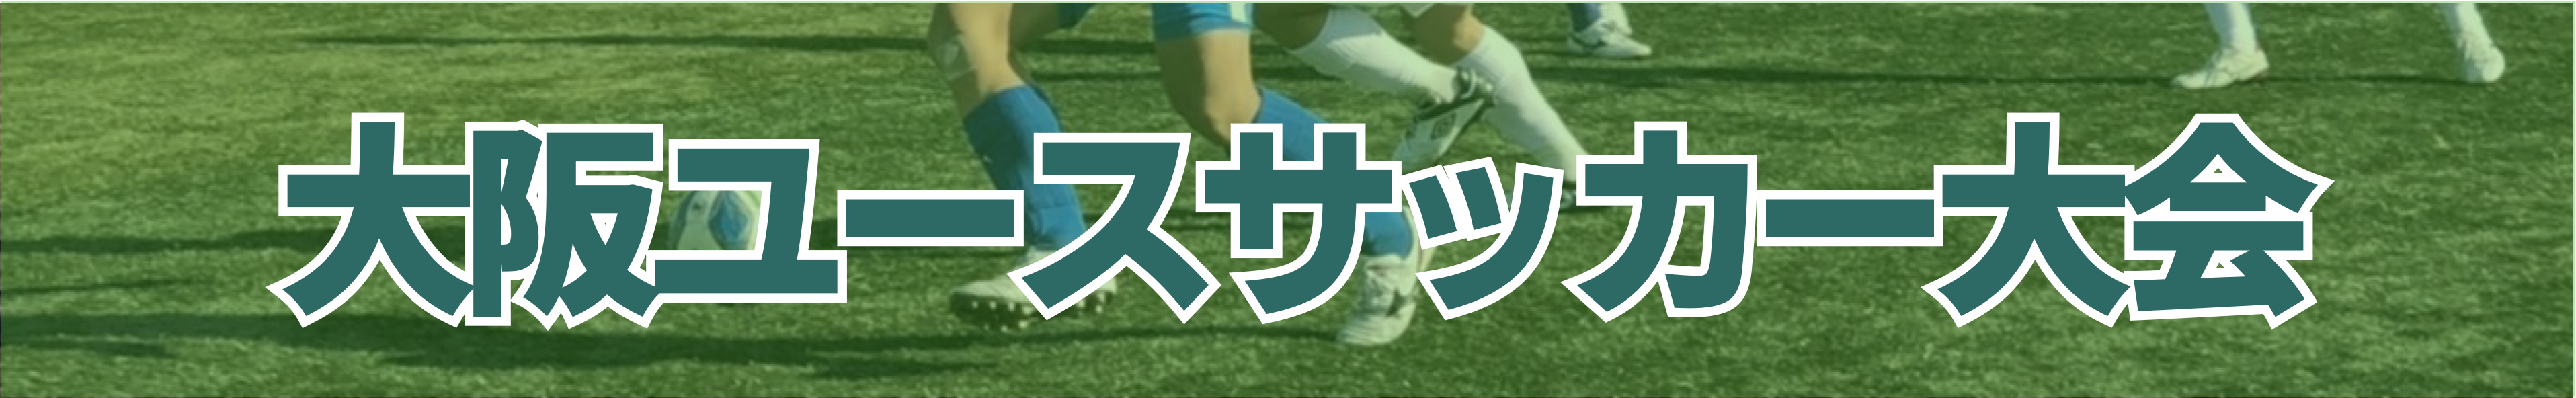 大阪ユースサッカー大会